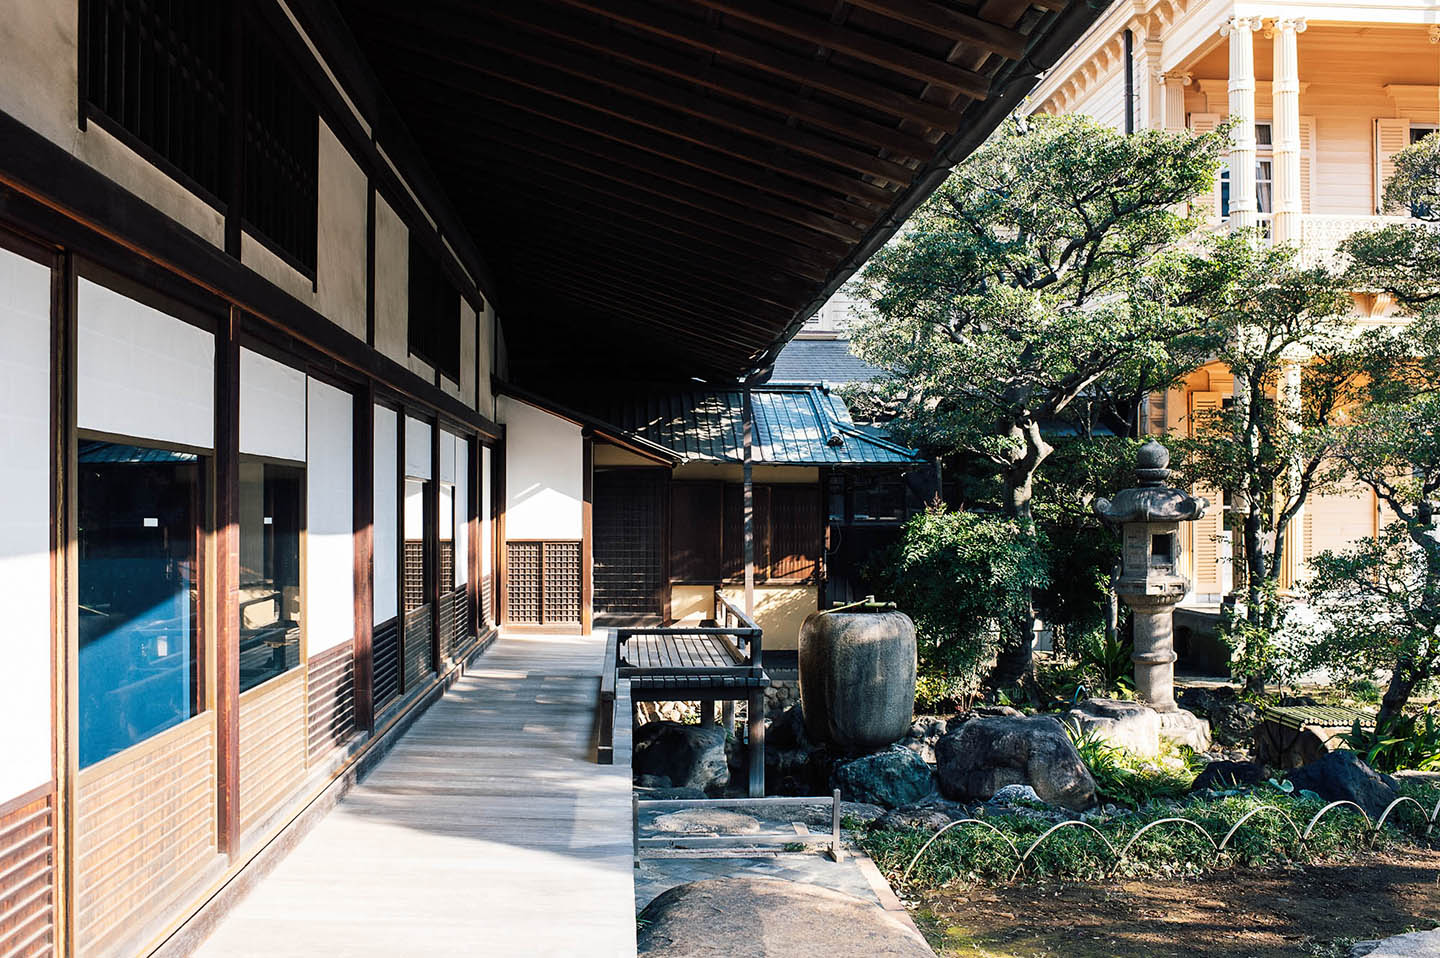 【Edo Tokyo Rethink】Kyū-Iwasaki-tei Gardens: Conception d’une exposition dans un lieu unique